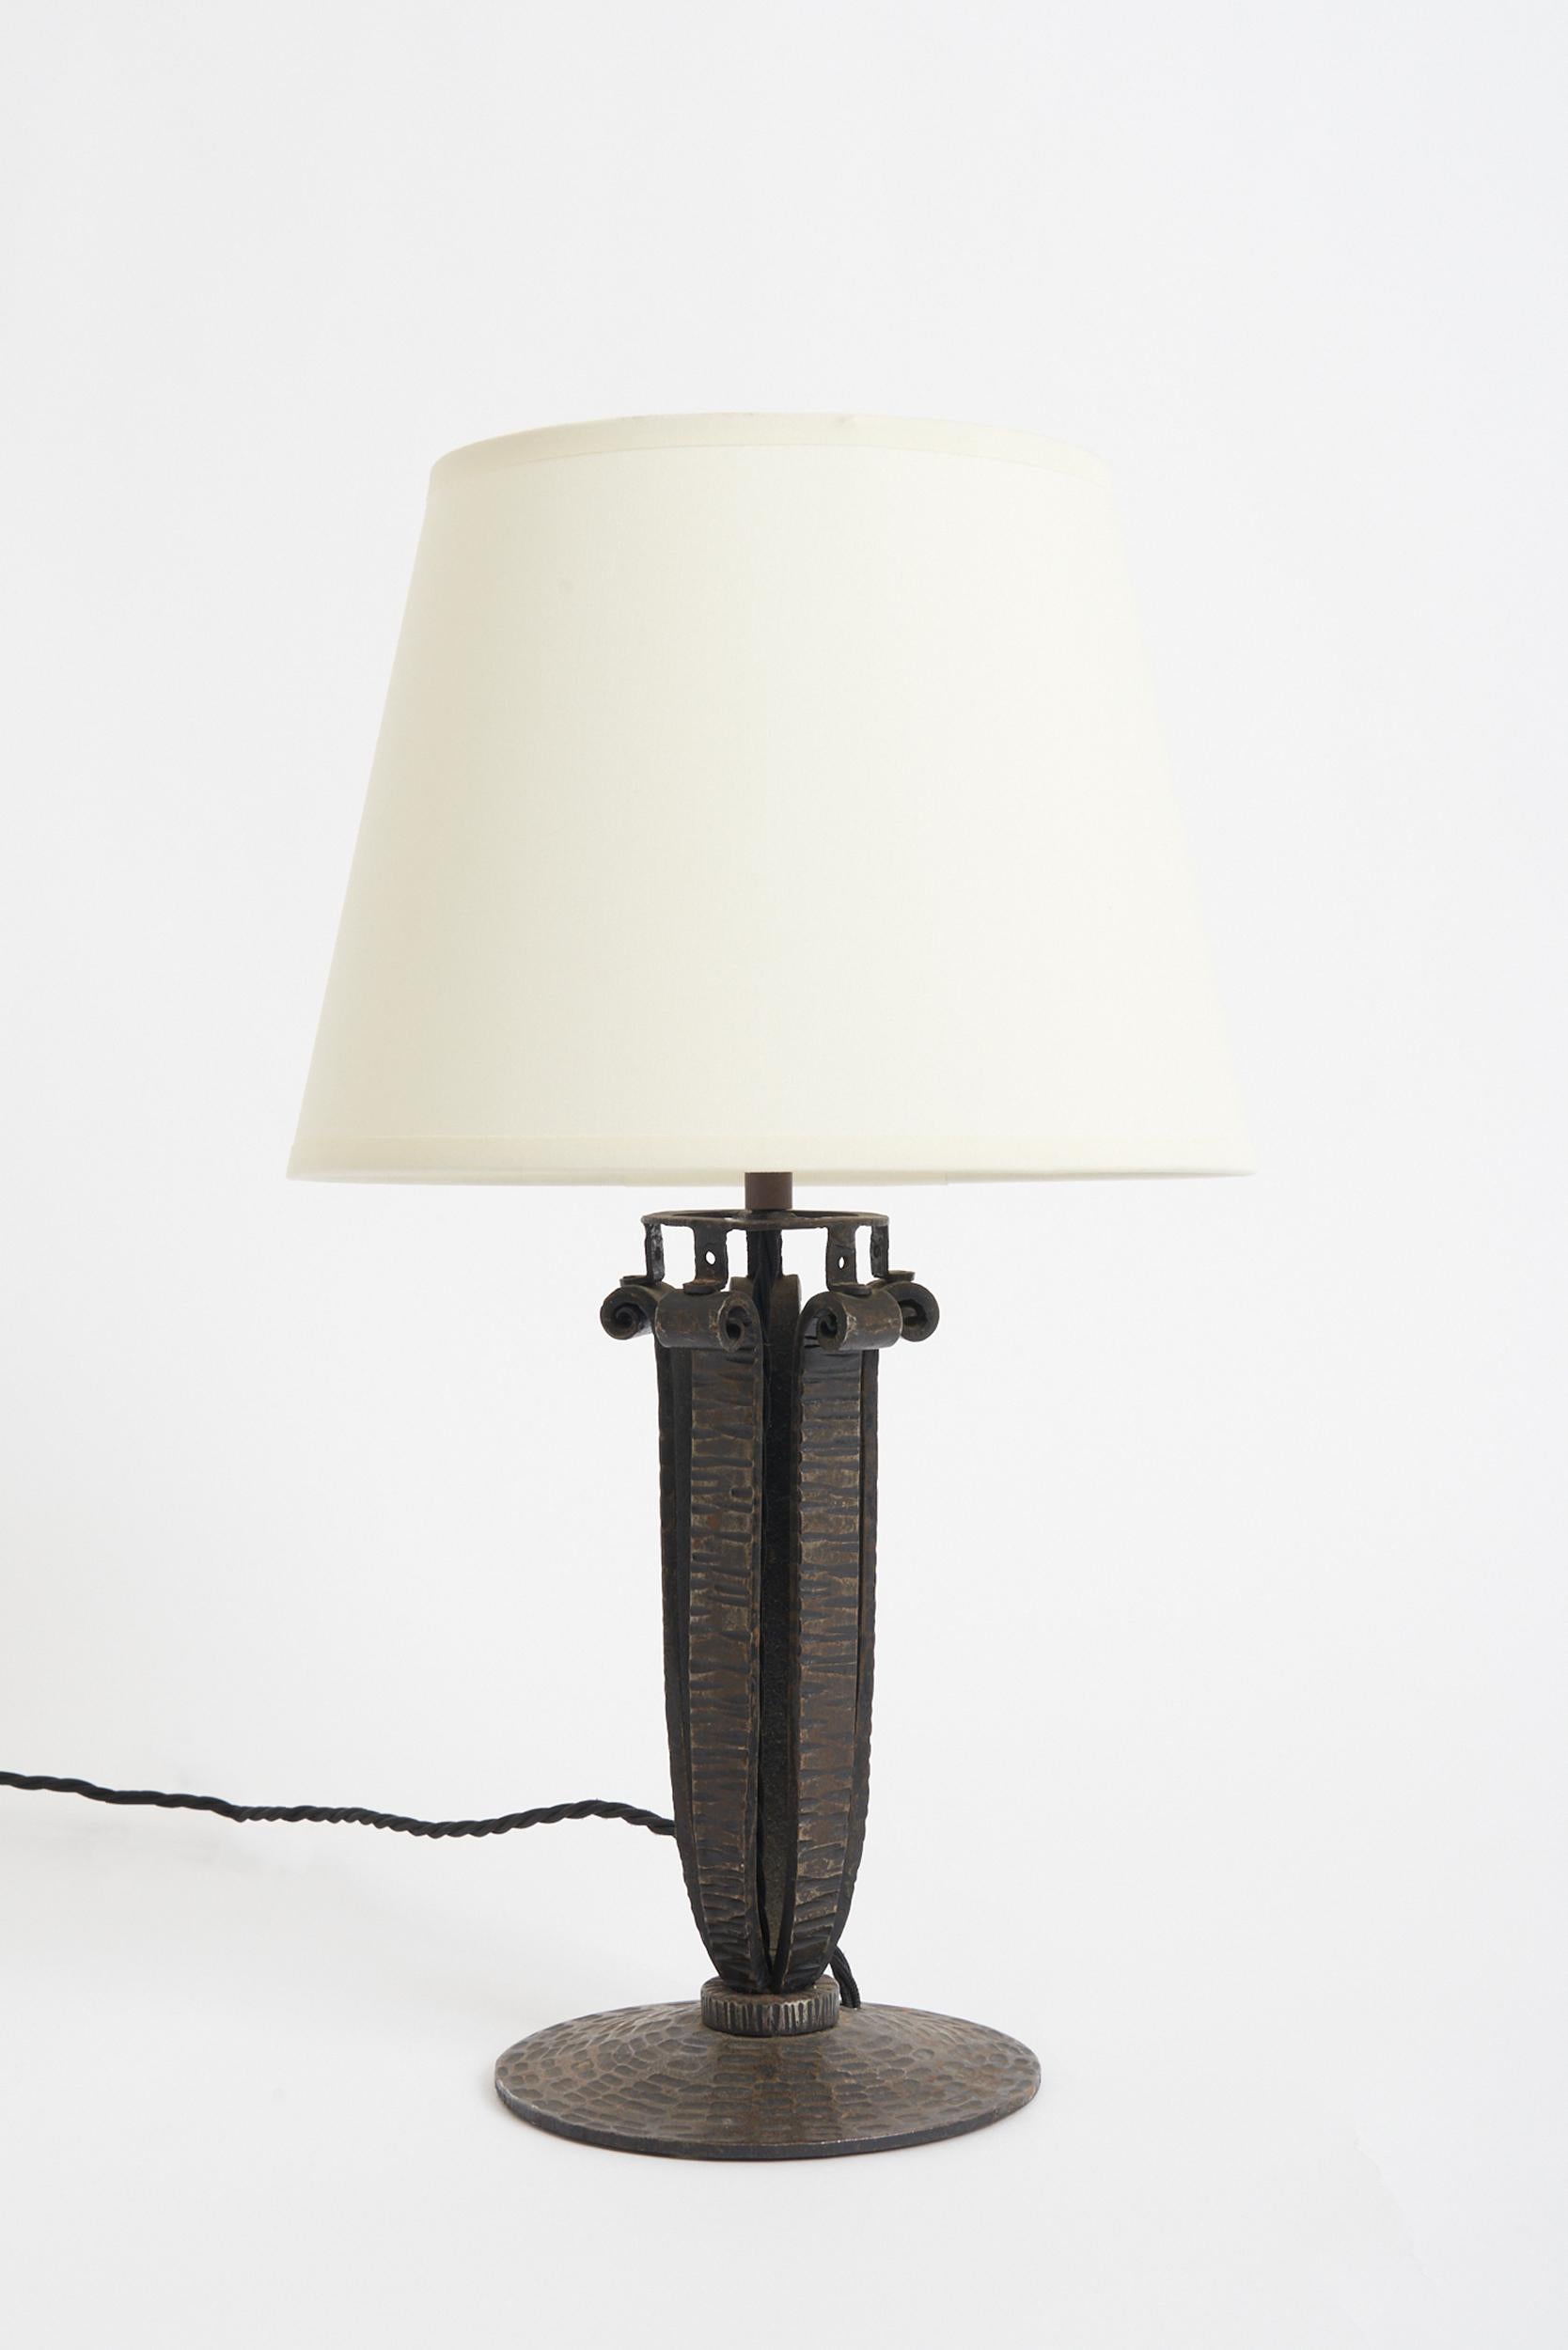 Lampe de table Art déco en fer forgé
France, Circa 1930
Avec l'abat-jour : 41,5 cm de haut par 25,5 cm de diamètre 
Base de la lampe uniquement : 29 cm de haut par 16 cm de diamètre